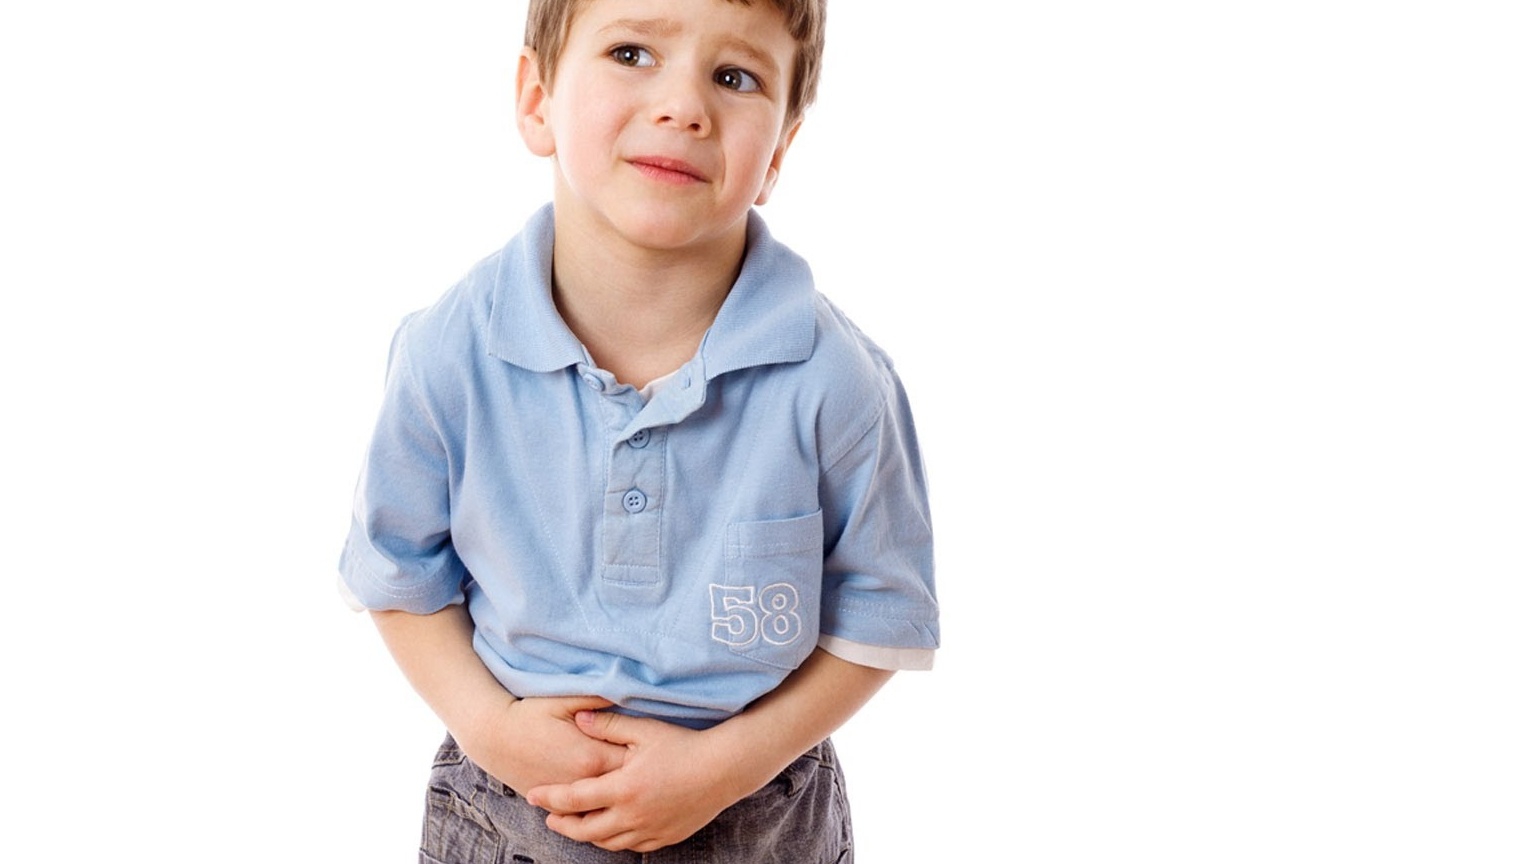 Có những biện pháp phòng ngừa nào để tránh đau ruột thừa ở trẻ em?